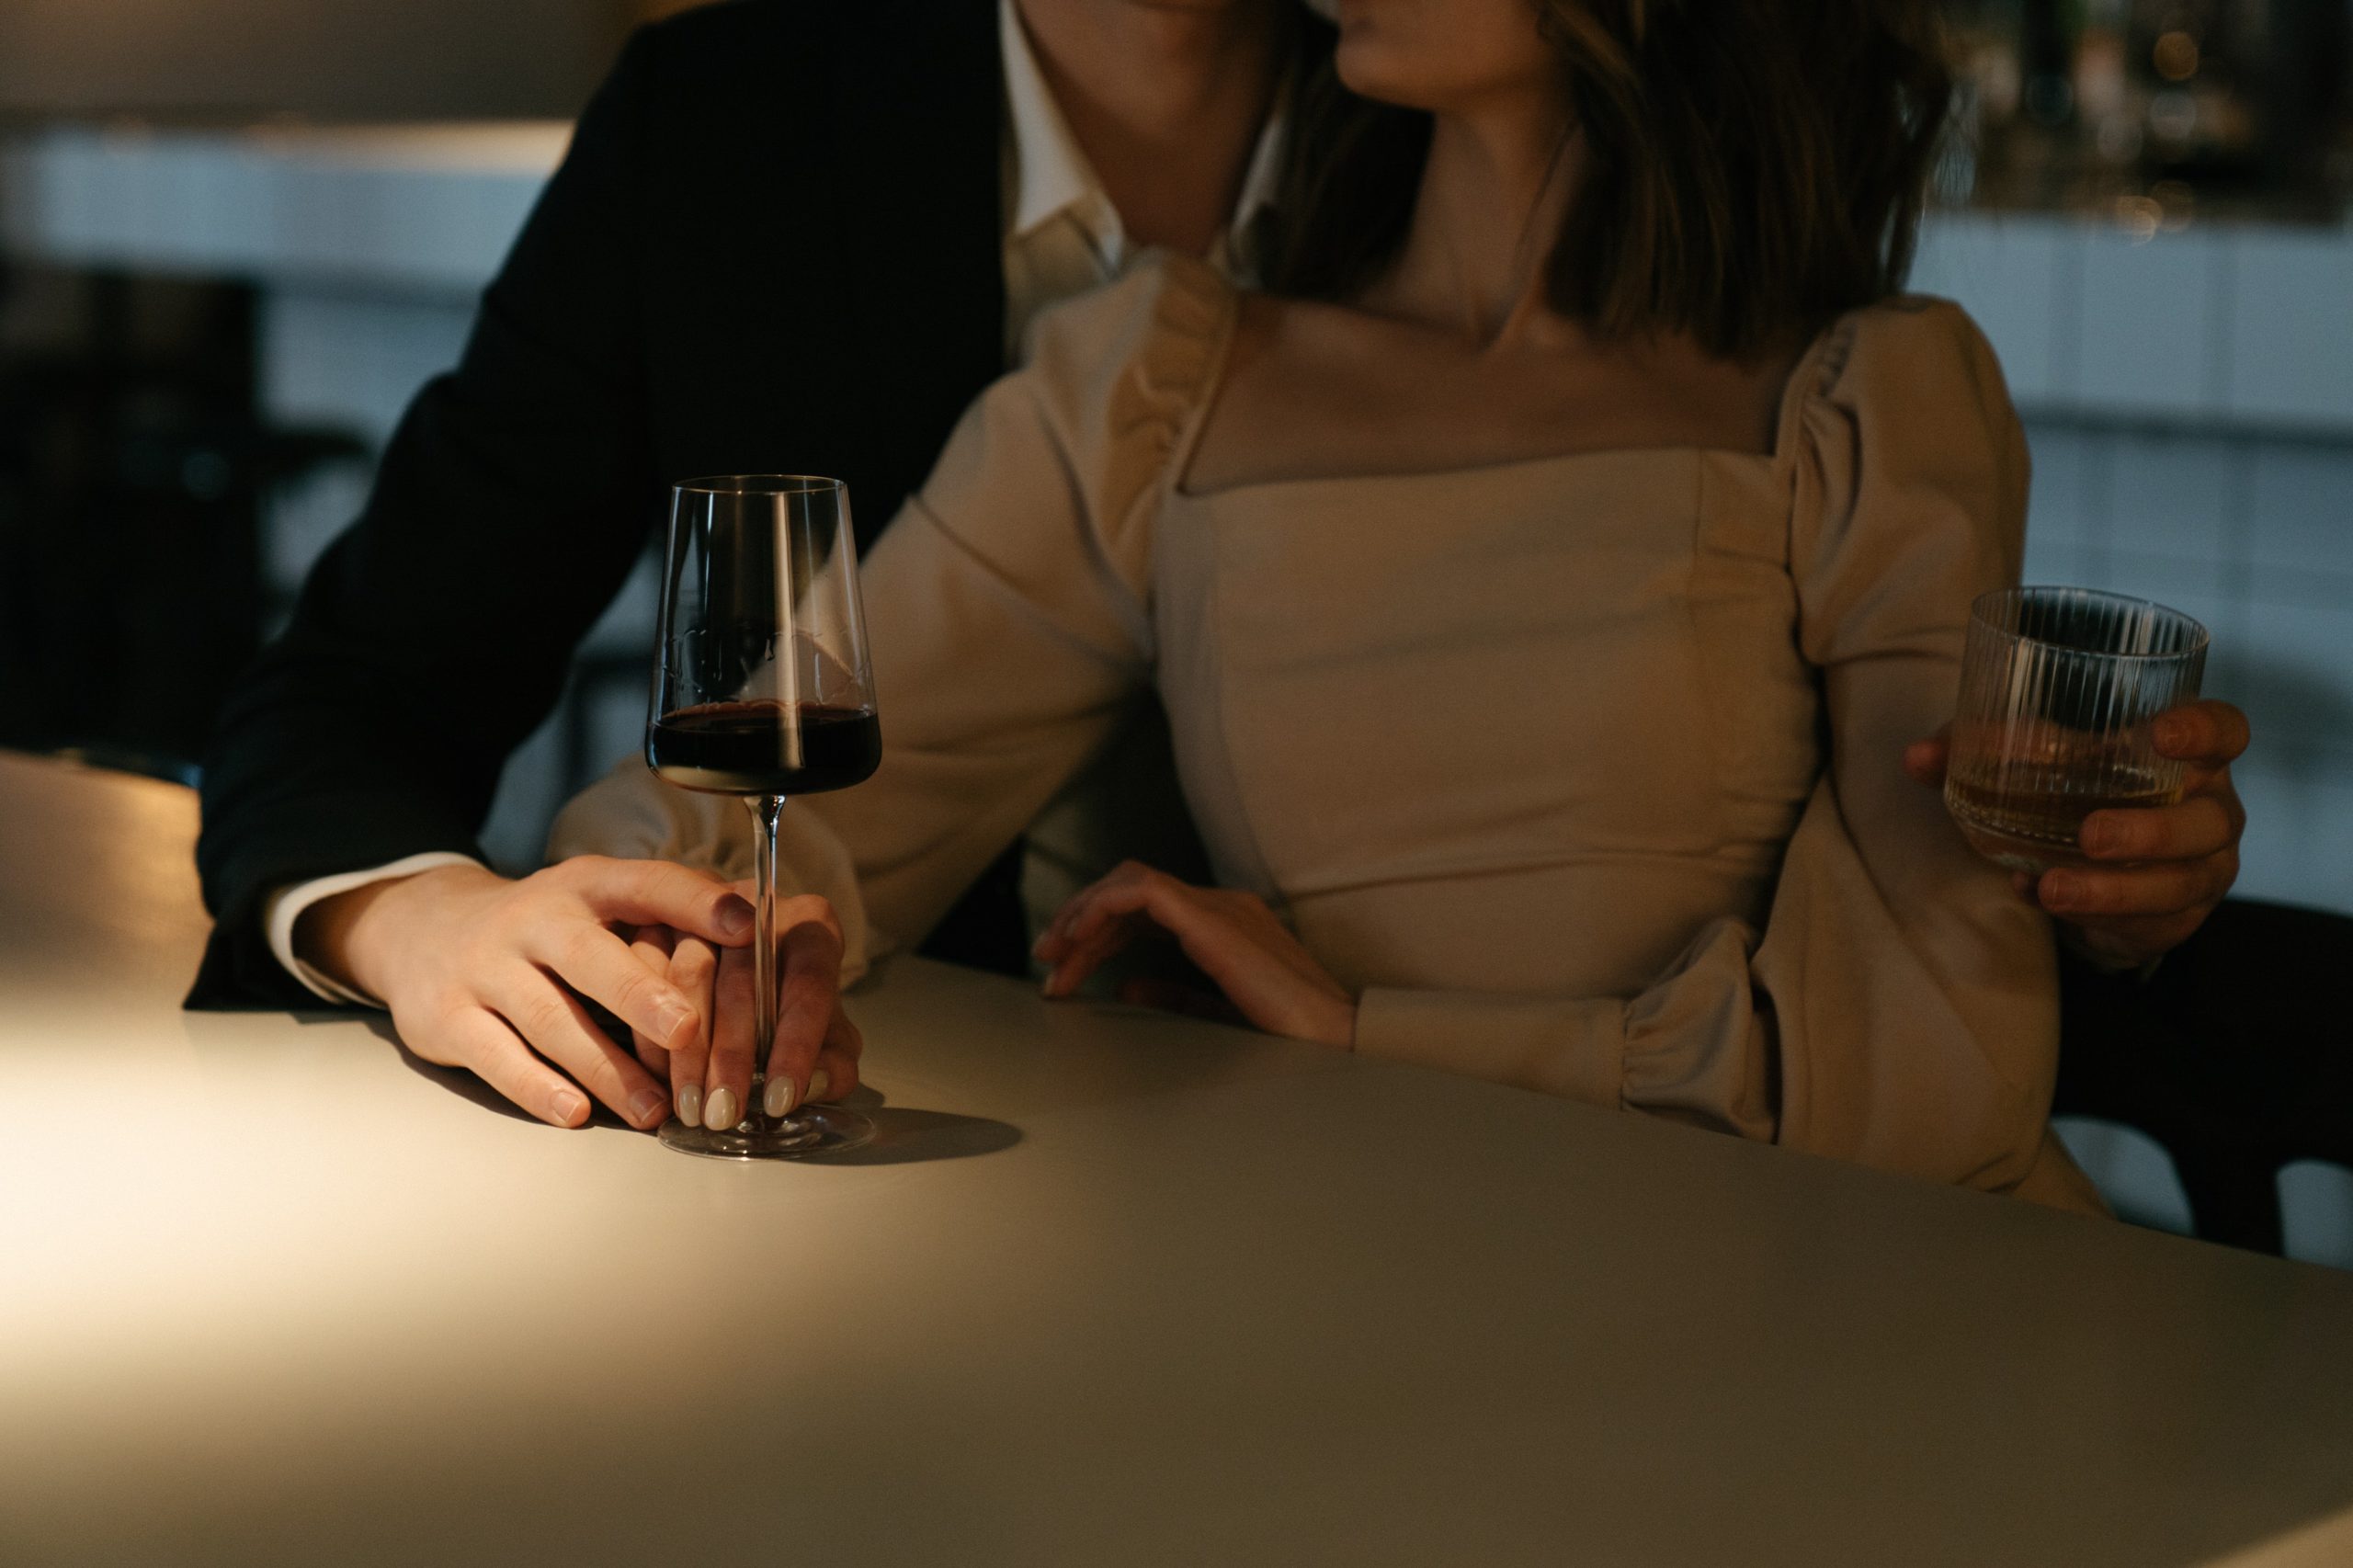 Image de deux personnes buvant du vin dans un verre